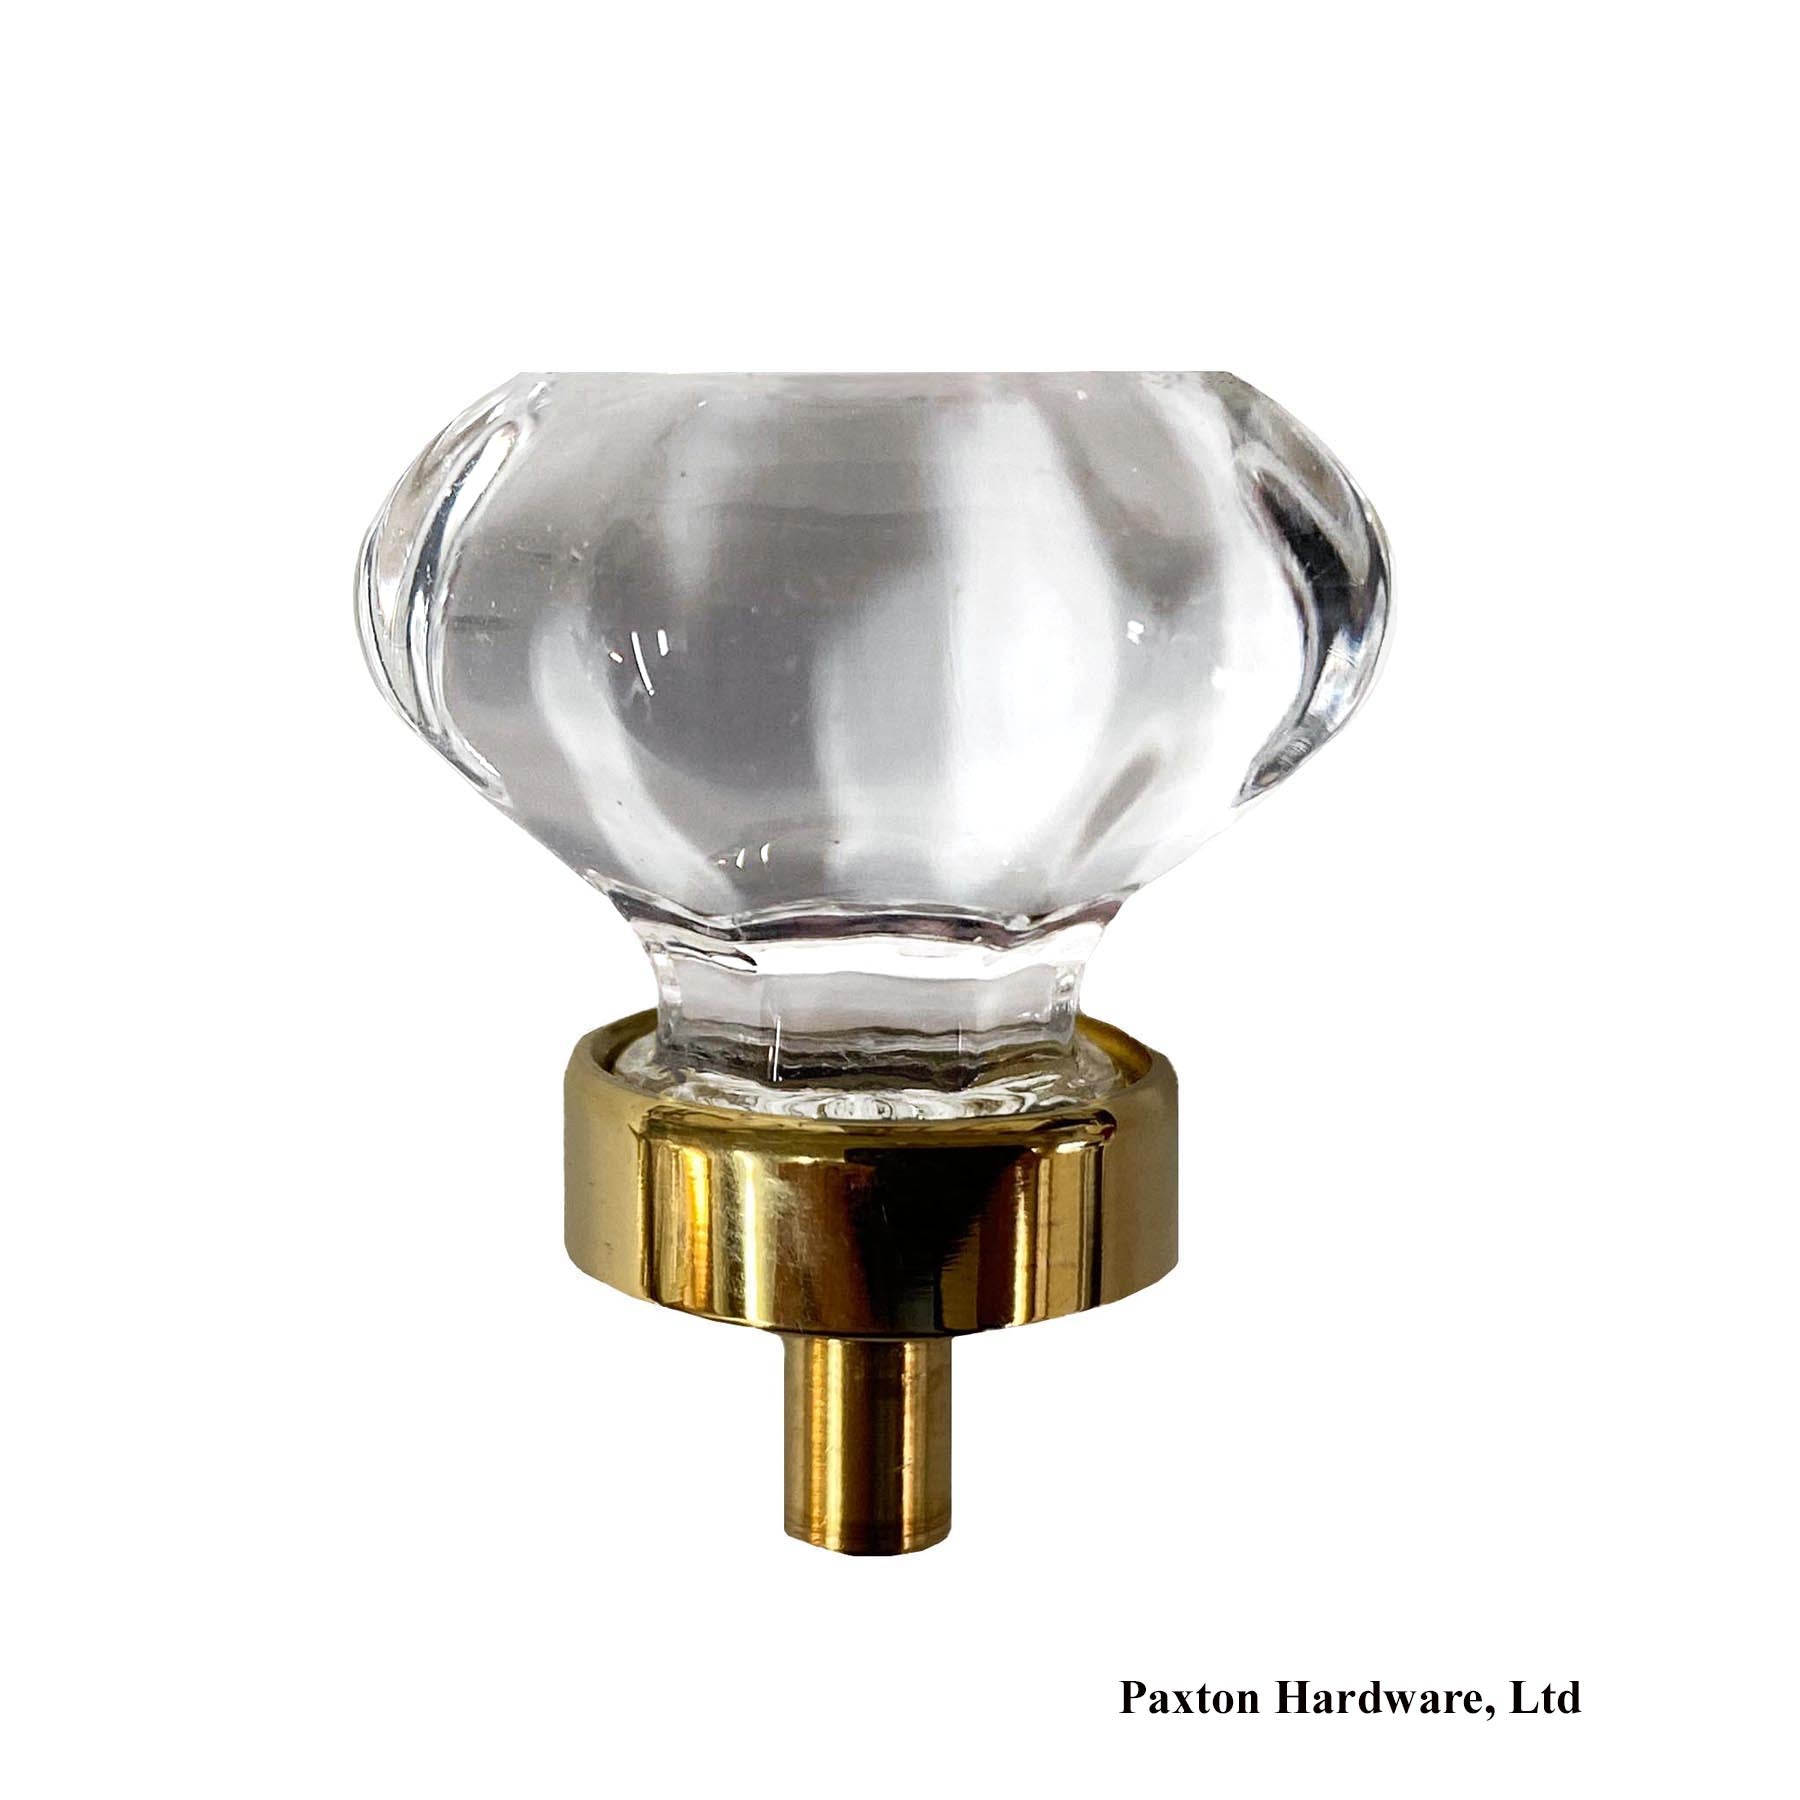 Glass & Brass 1-1/4" Cabinet Knob - Paxton Hardware